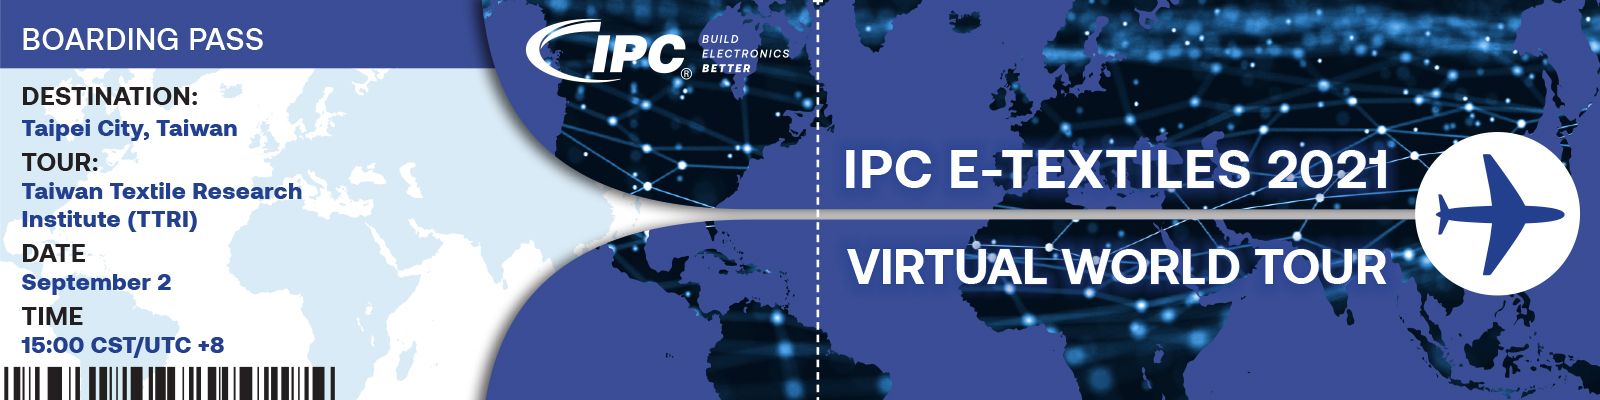 IPC E-Textiles 2021 Virtual World Tour Taiwan